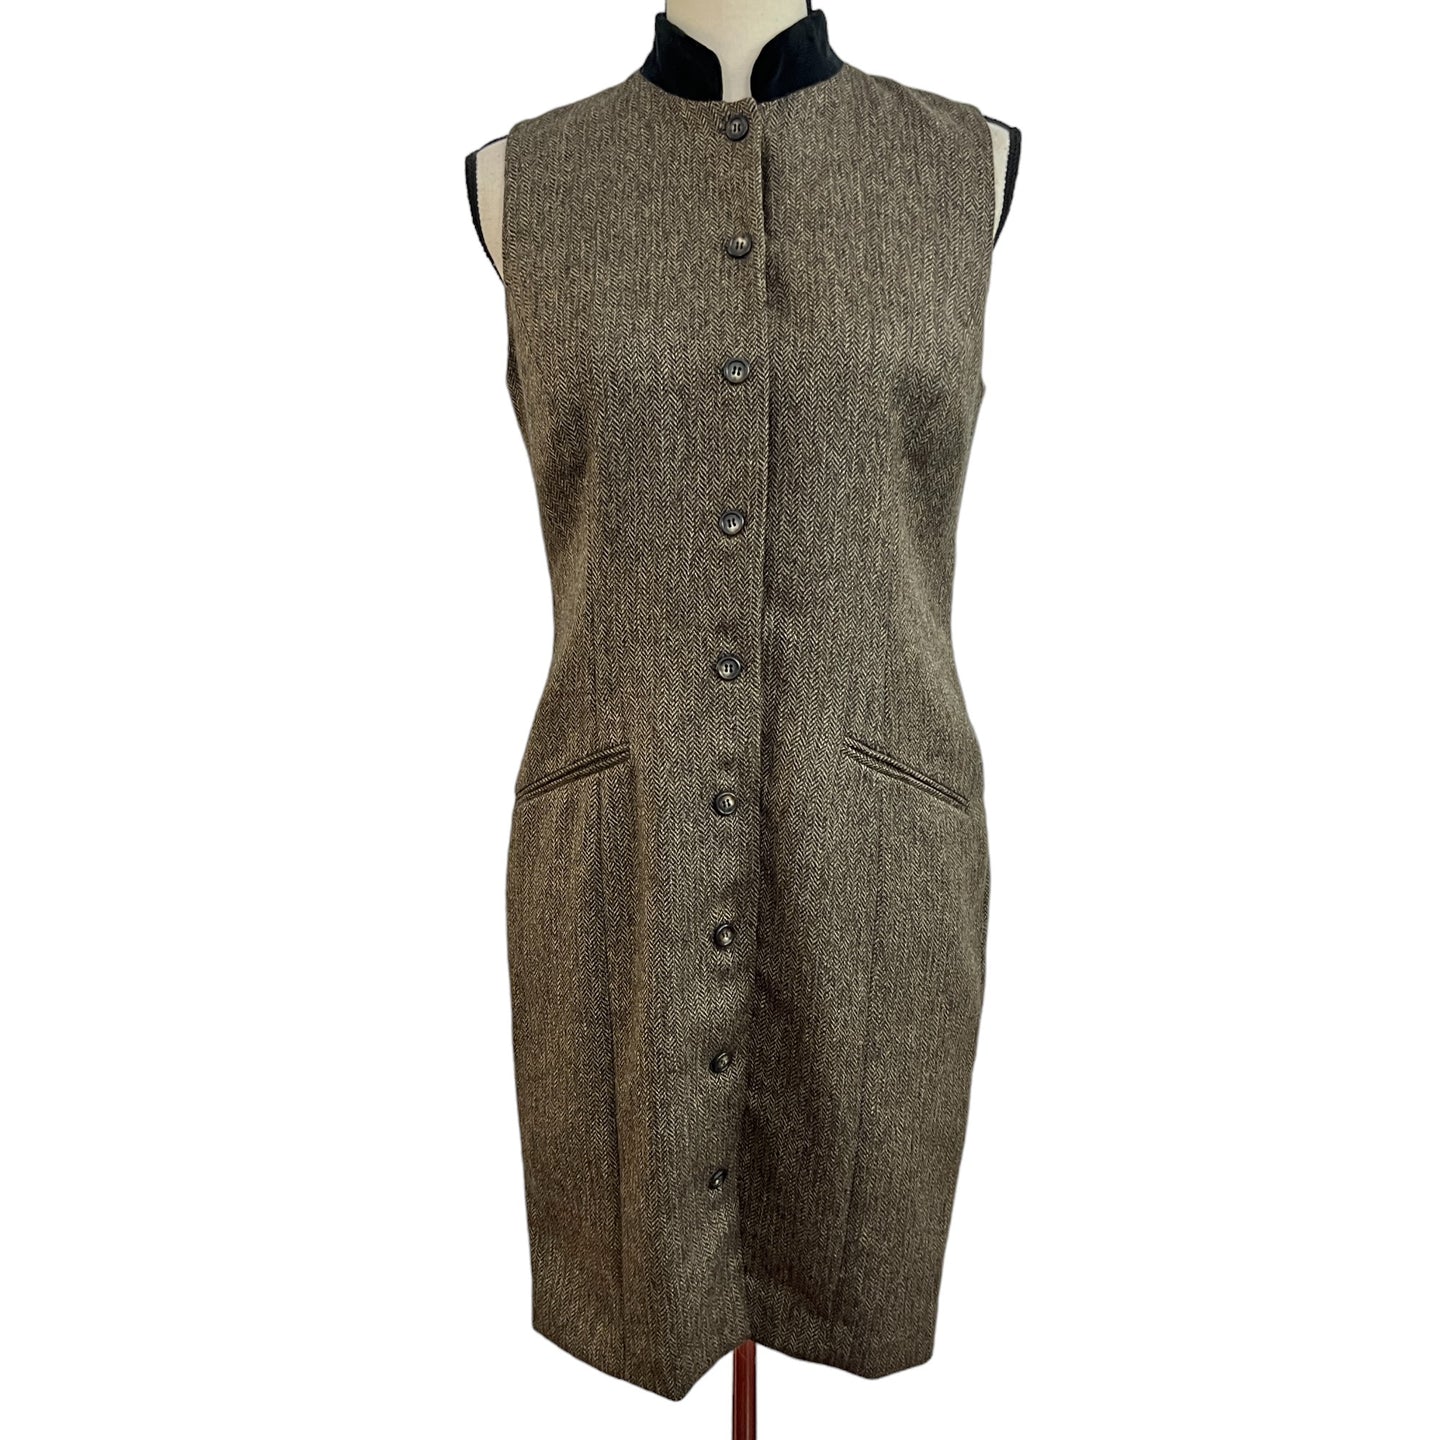 Vintage 90s Herringbone Wool Tweed Sleeveless Brown Dress Size 6